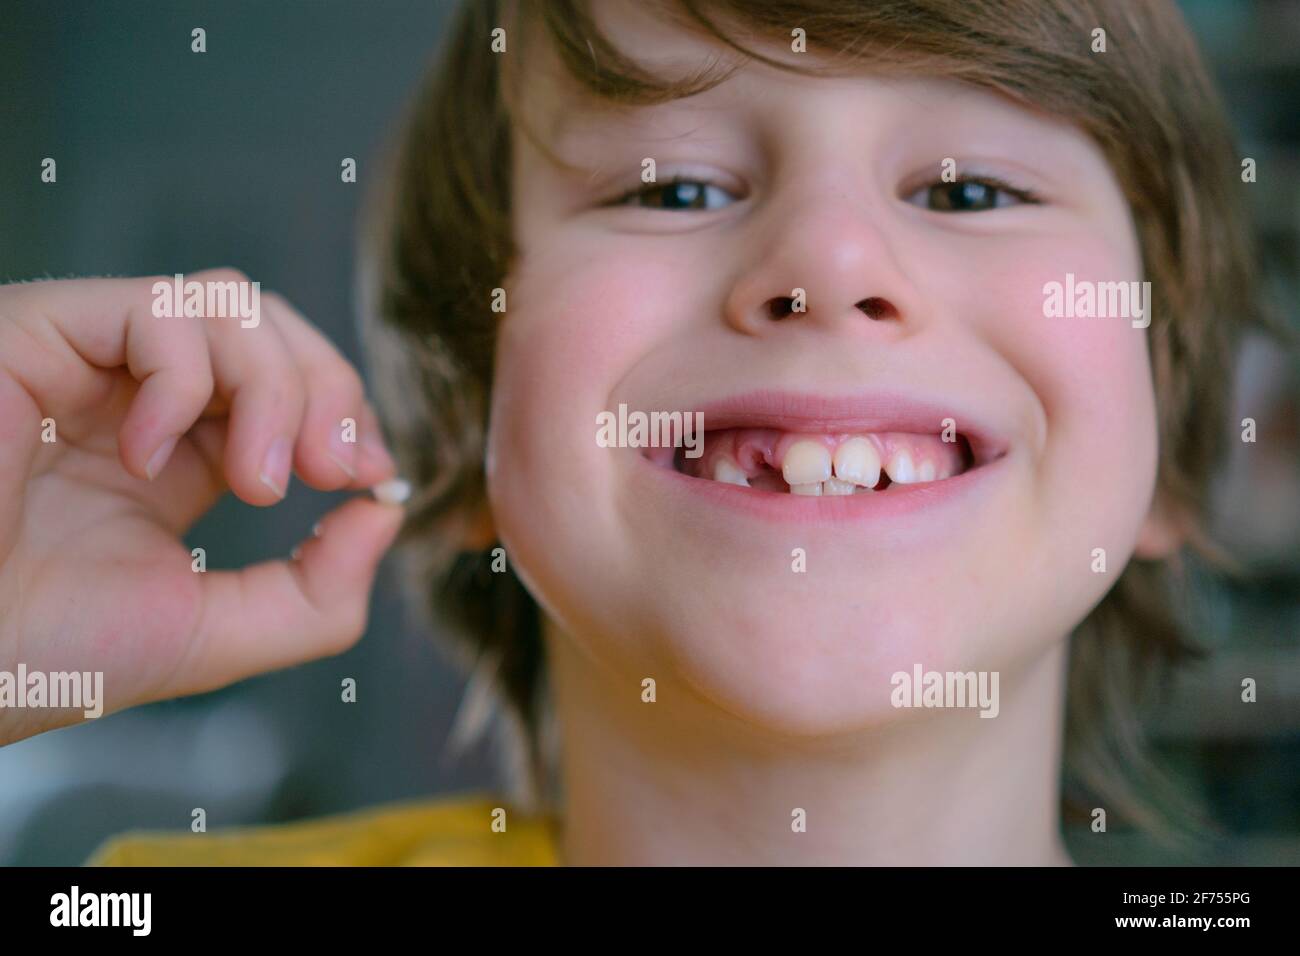 La dent de lait du garçon est tombée. Un enfant satisfait tient une dent dans sa main. Un trou dans la gomme est visible Banque D'Images